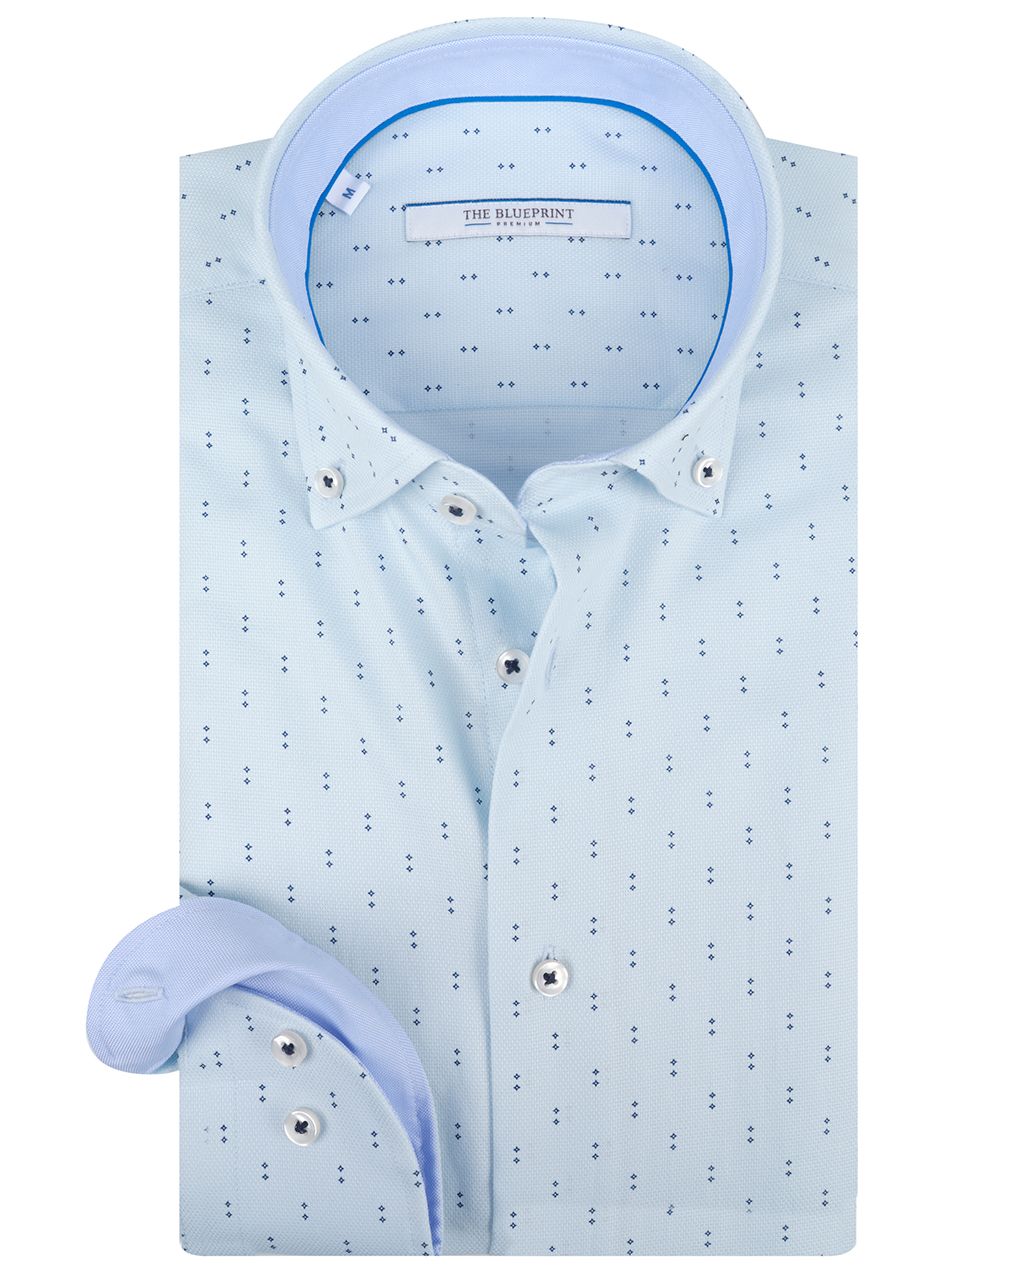 The BLUEPRINT Premium Trendy Overhemd LM Lichtblauw dessin 078407-001-L